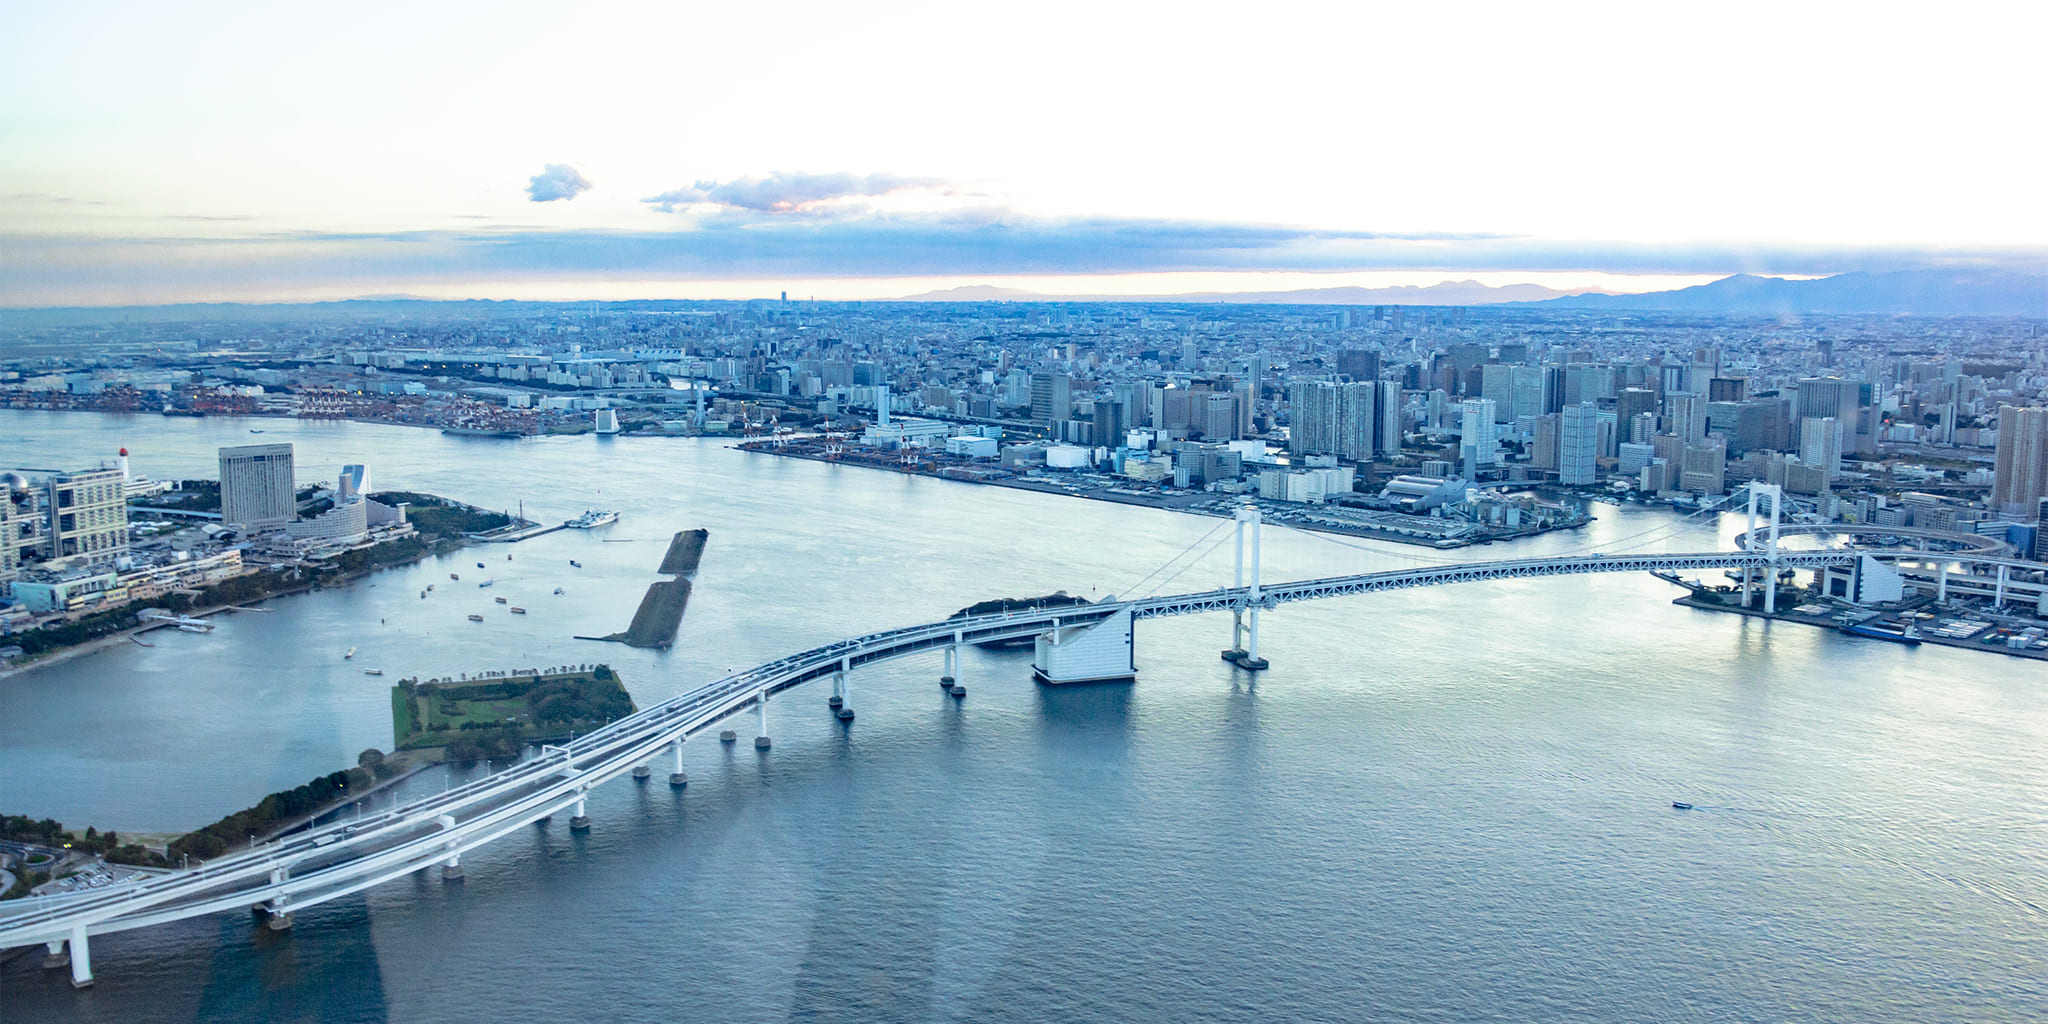 ヘリコプターで東京上空をフライトして見えるレインボーブリッジ